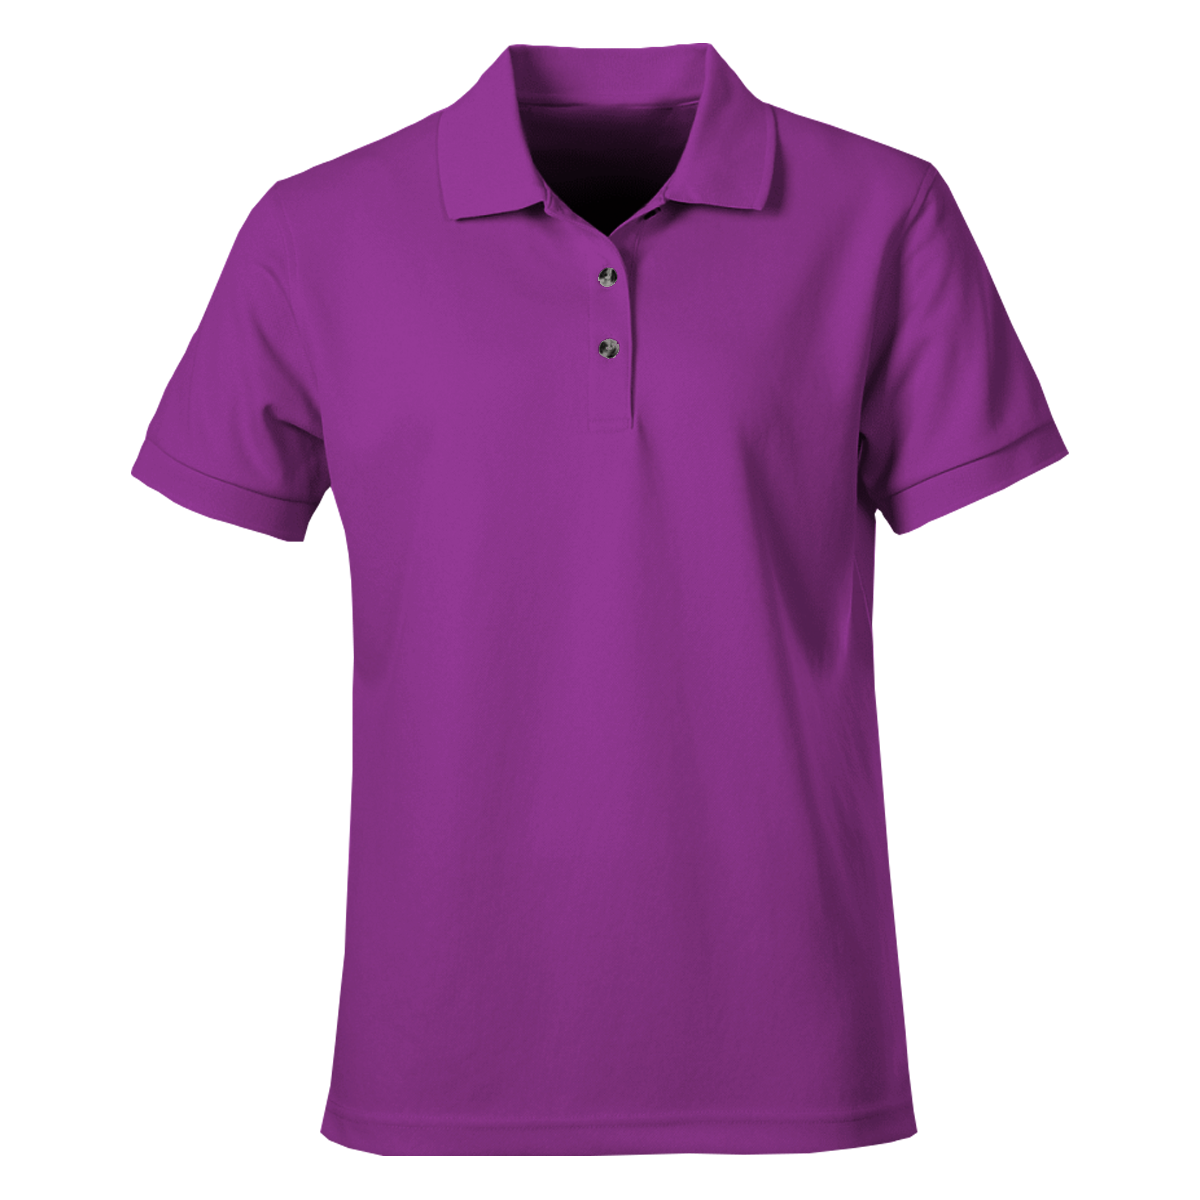 polo shirts purple